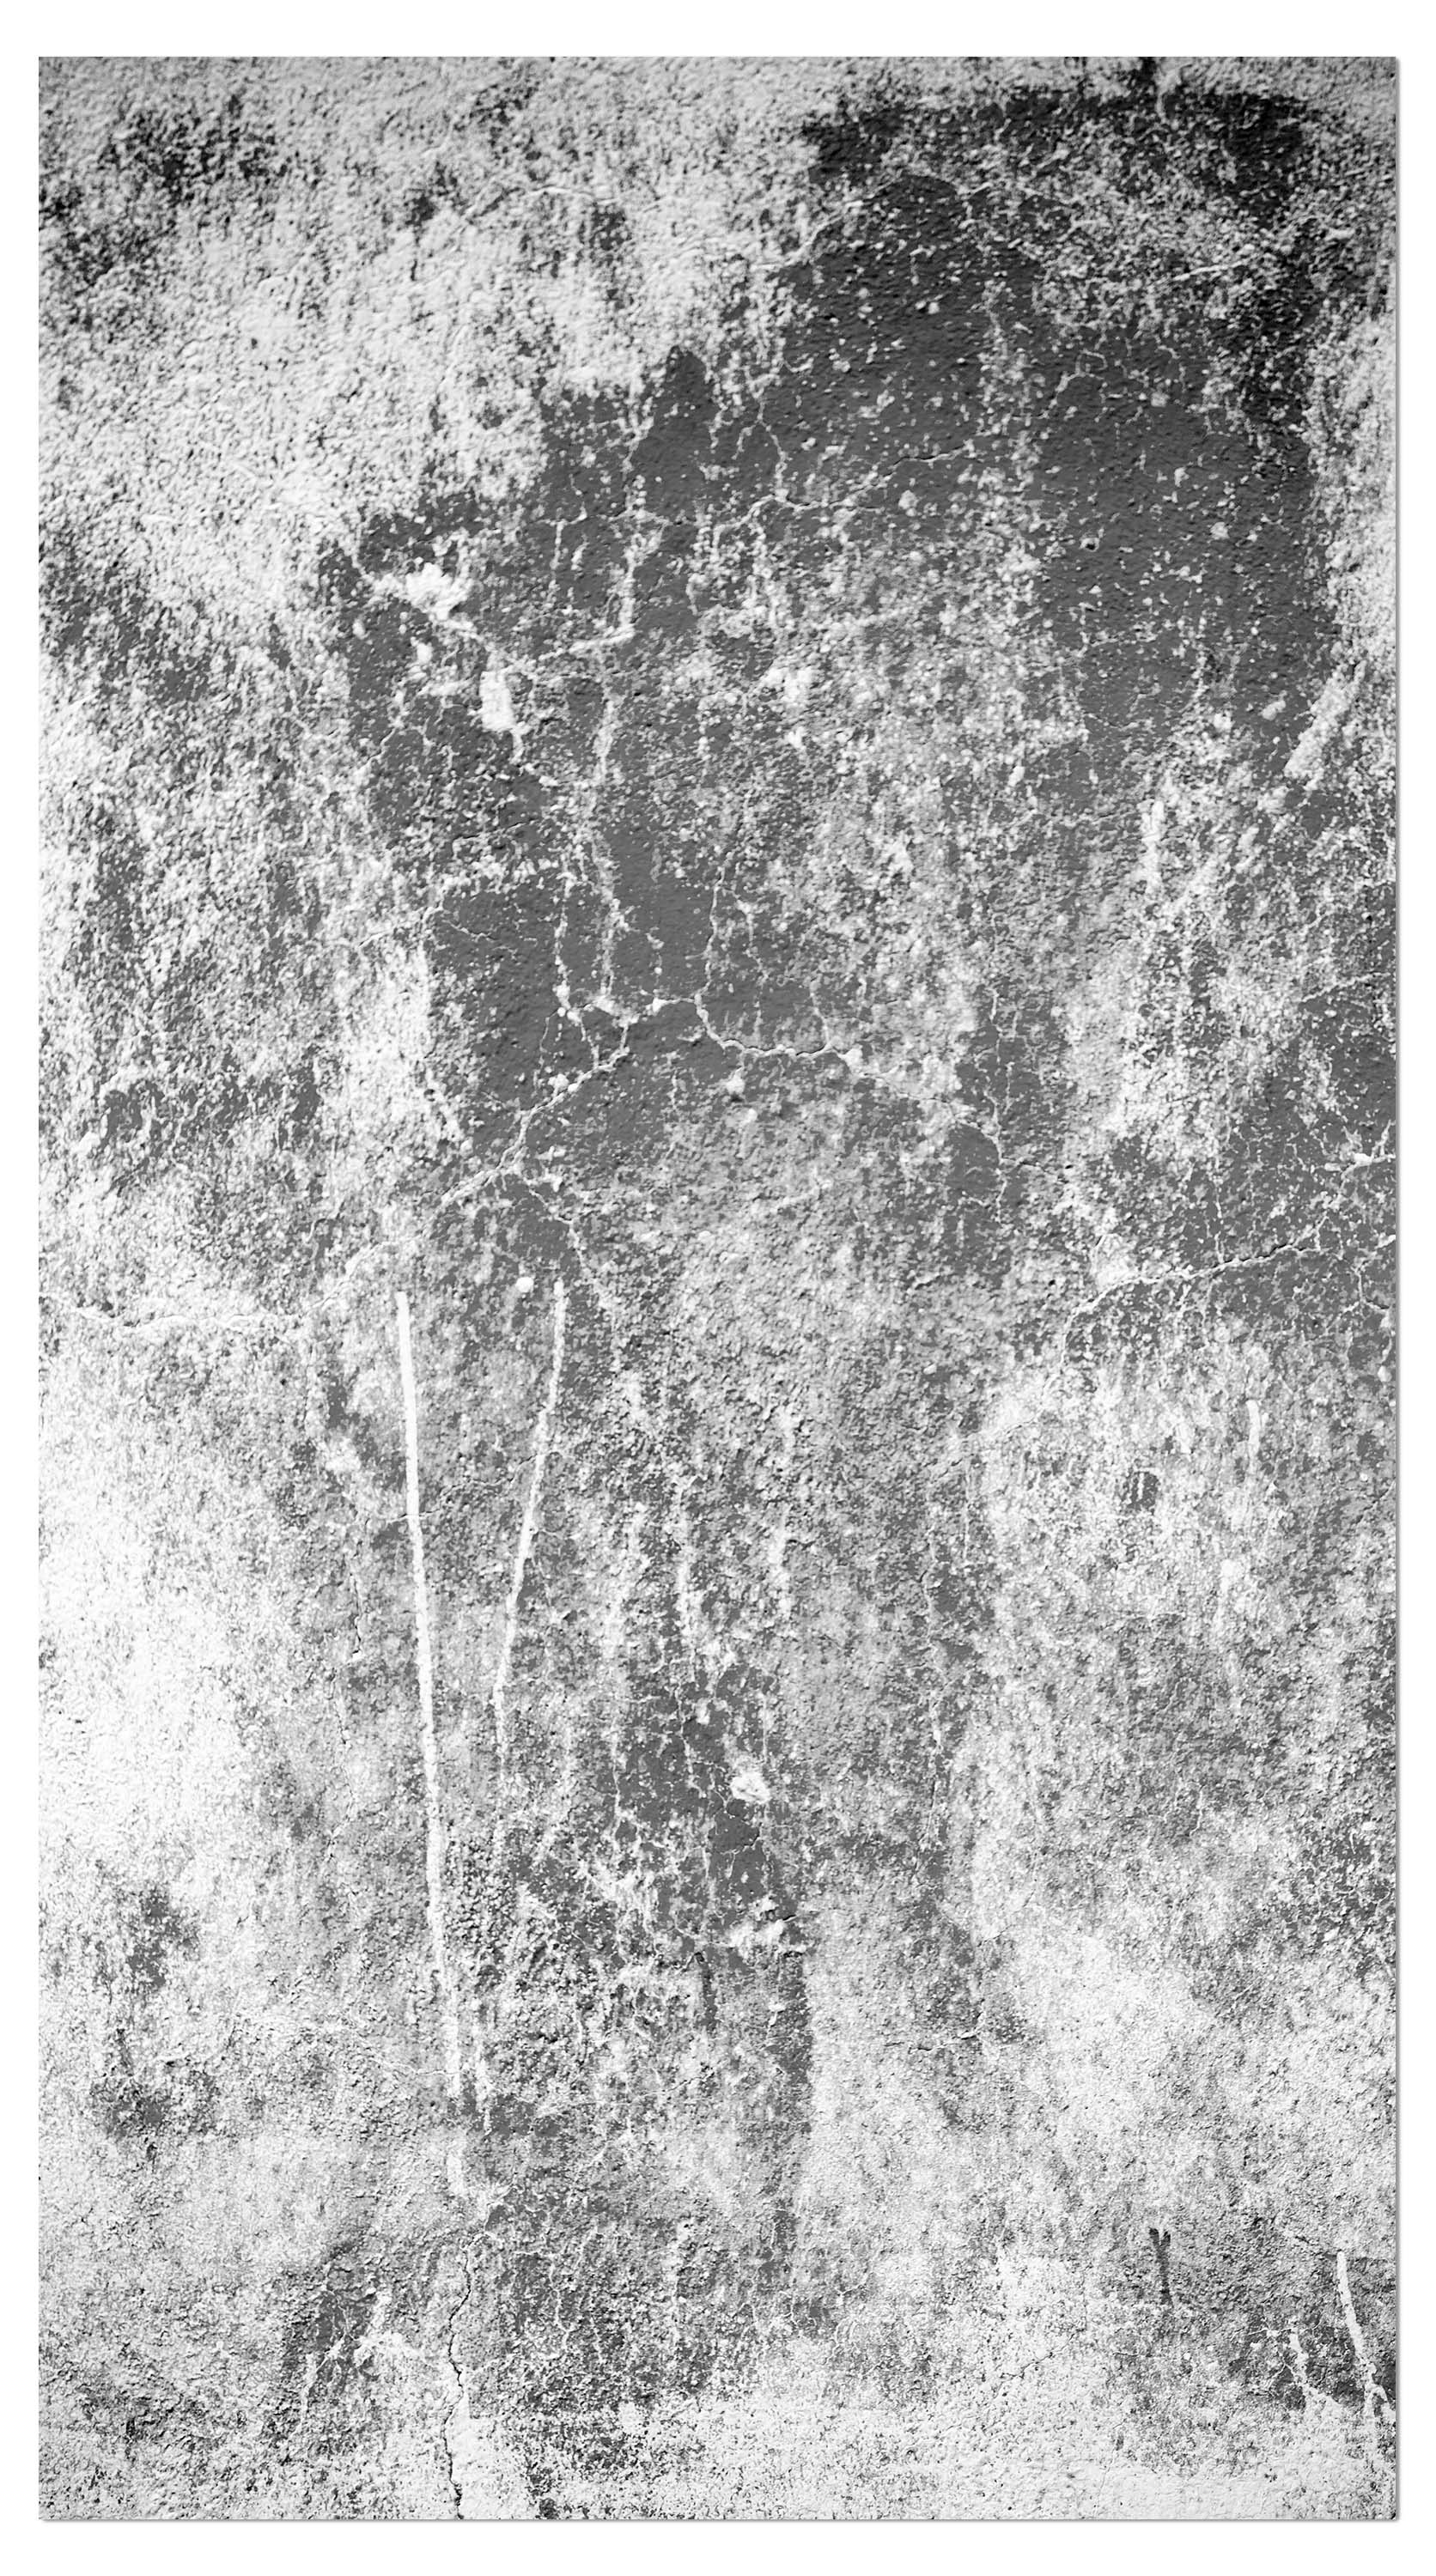 Garderobe Eine alte Mauer in Schwarz und Weiß M0940 entdecken - Bild 4